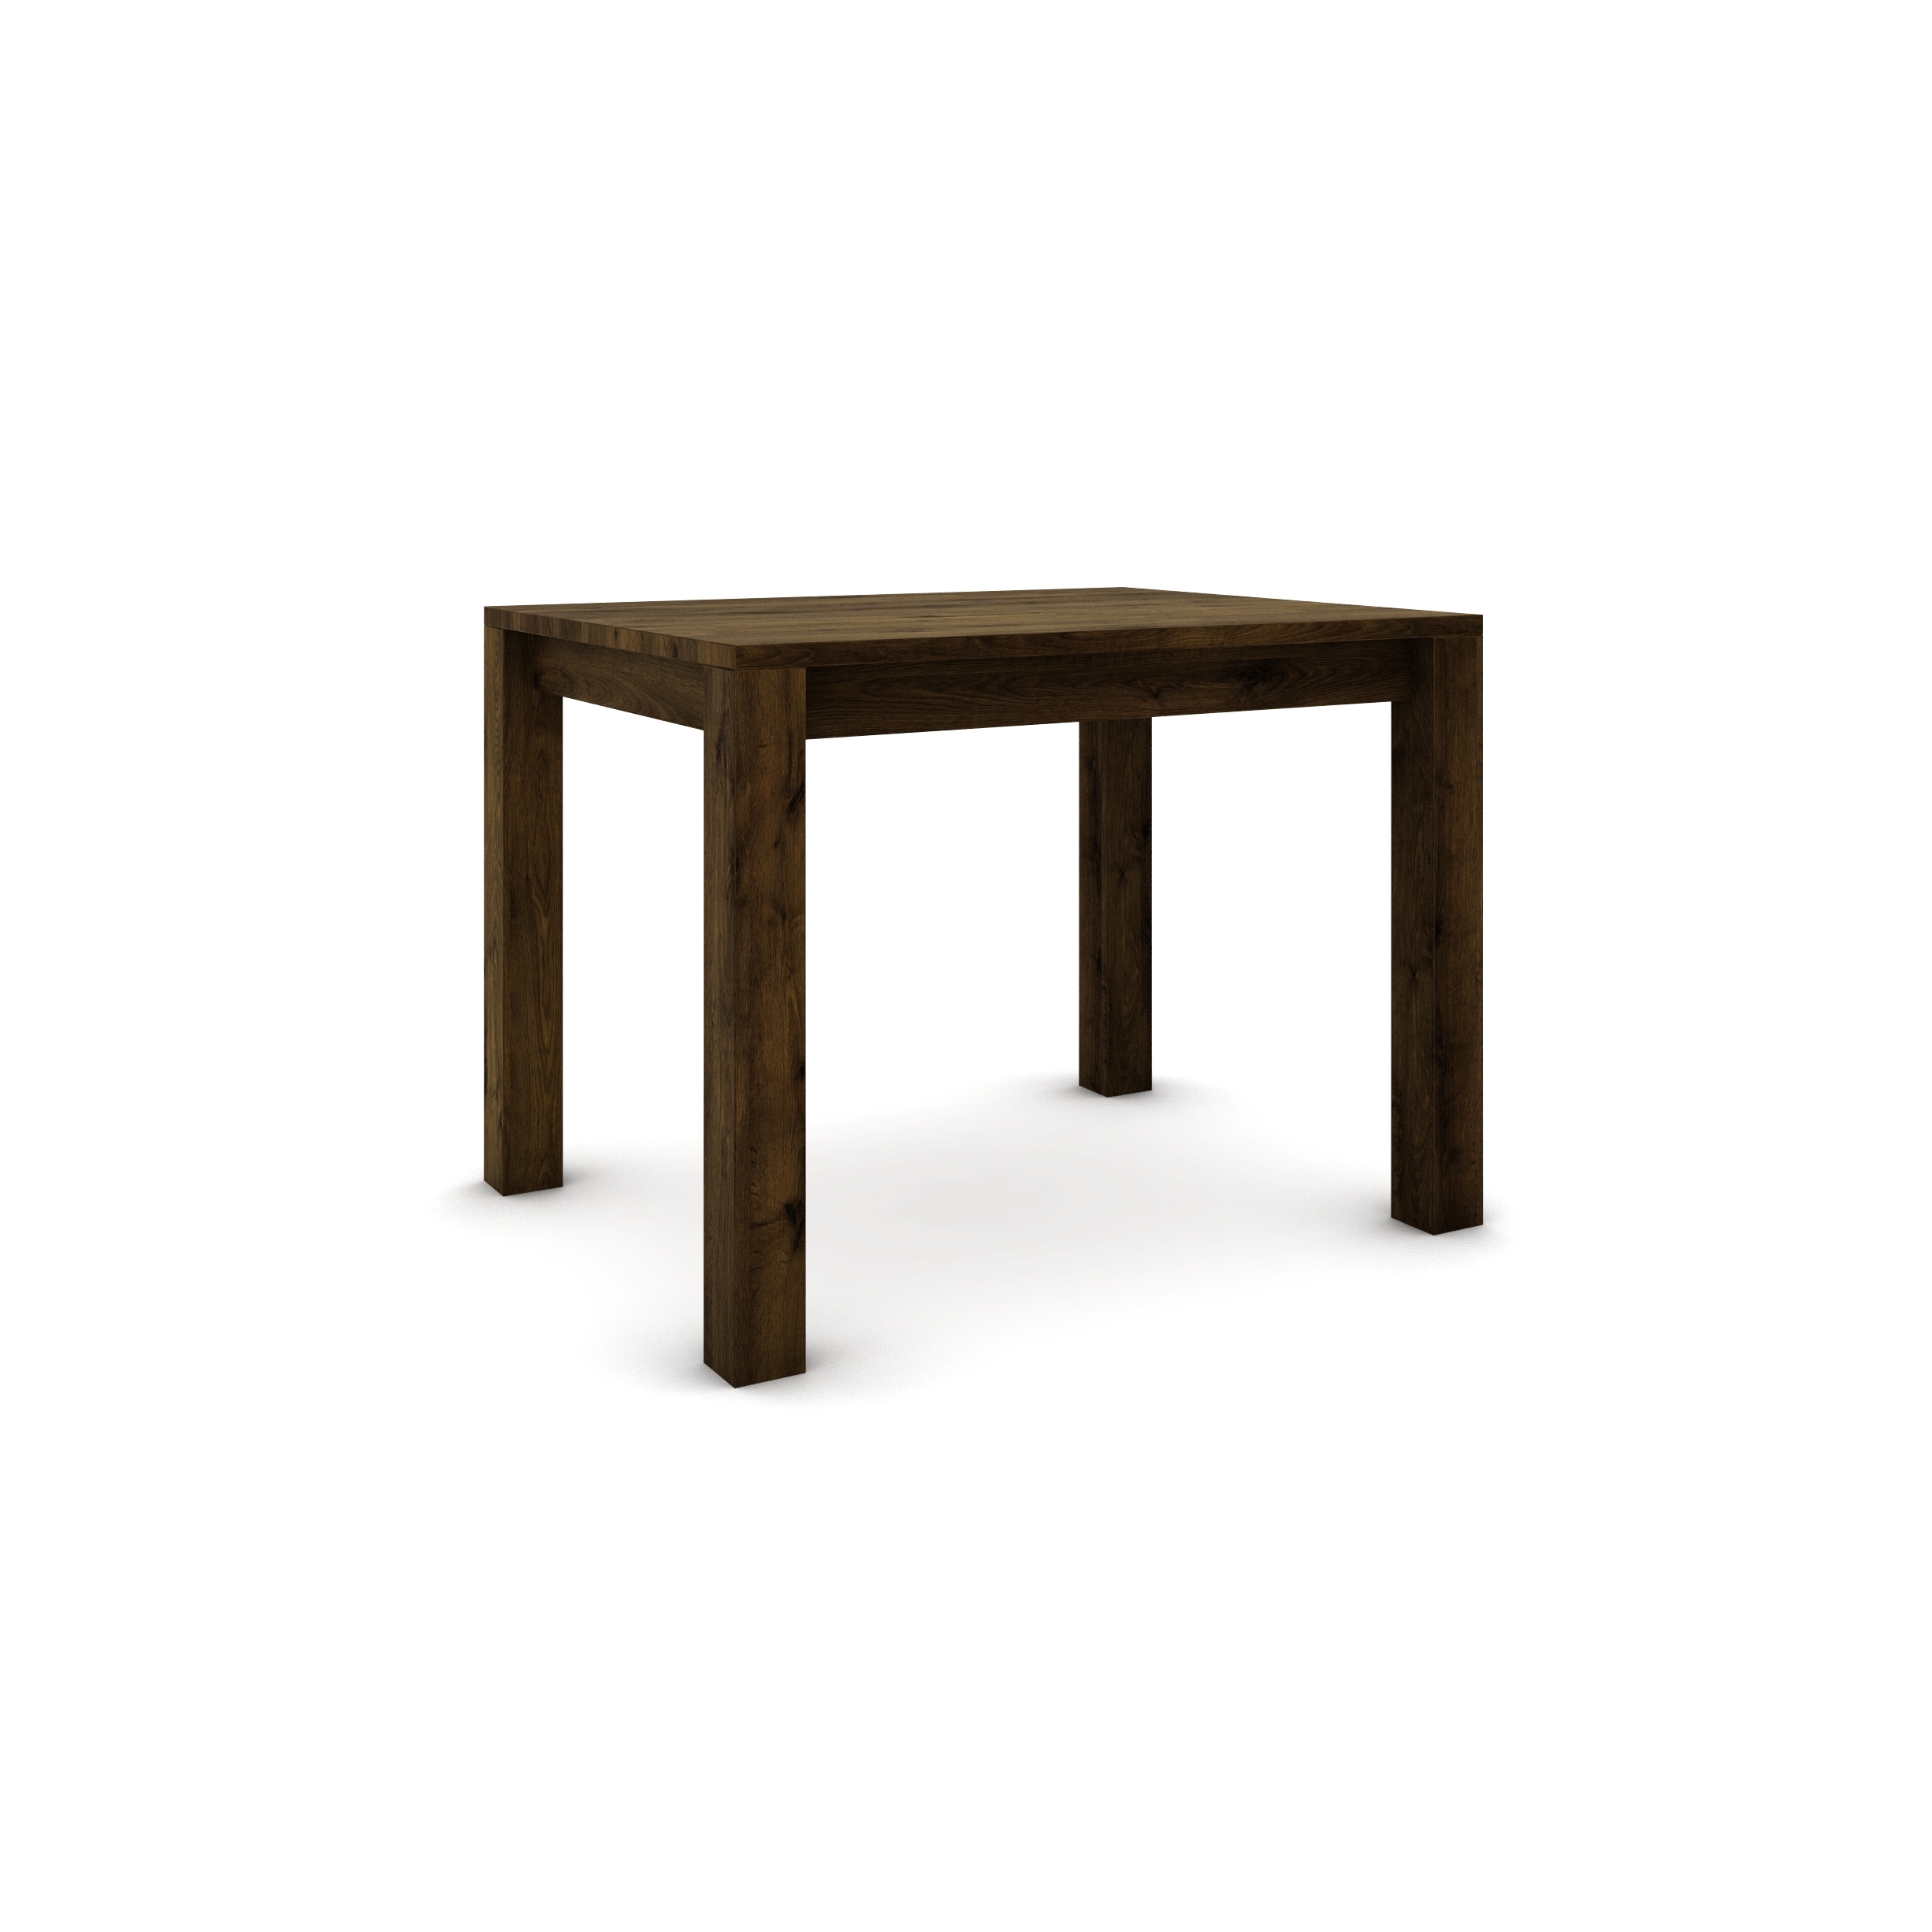 Dubový stôl 100 x 80 cm, hnedá zem so zlatým efektom